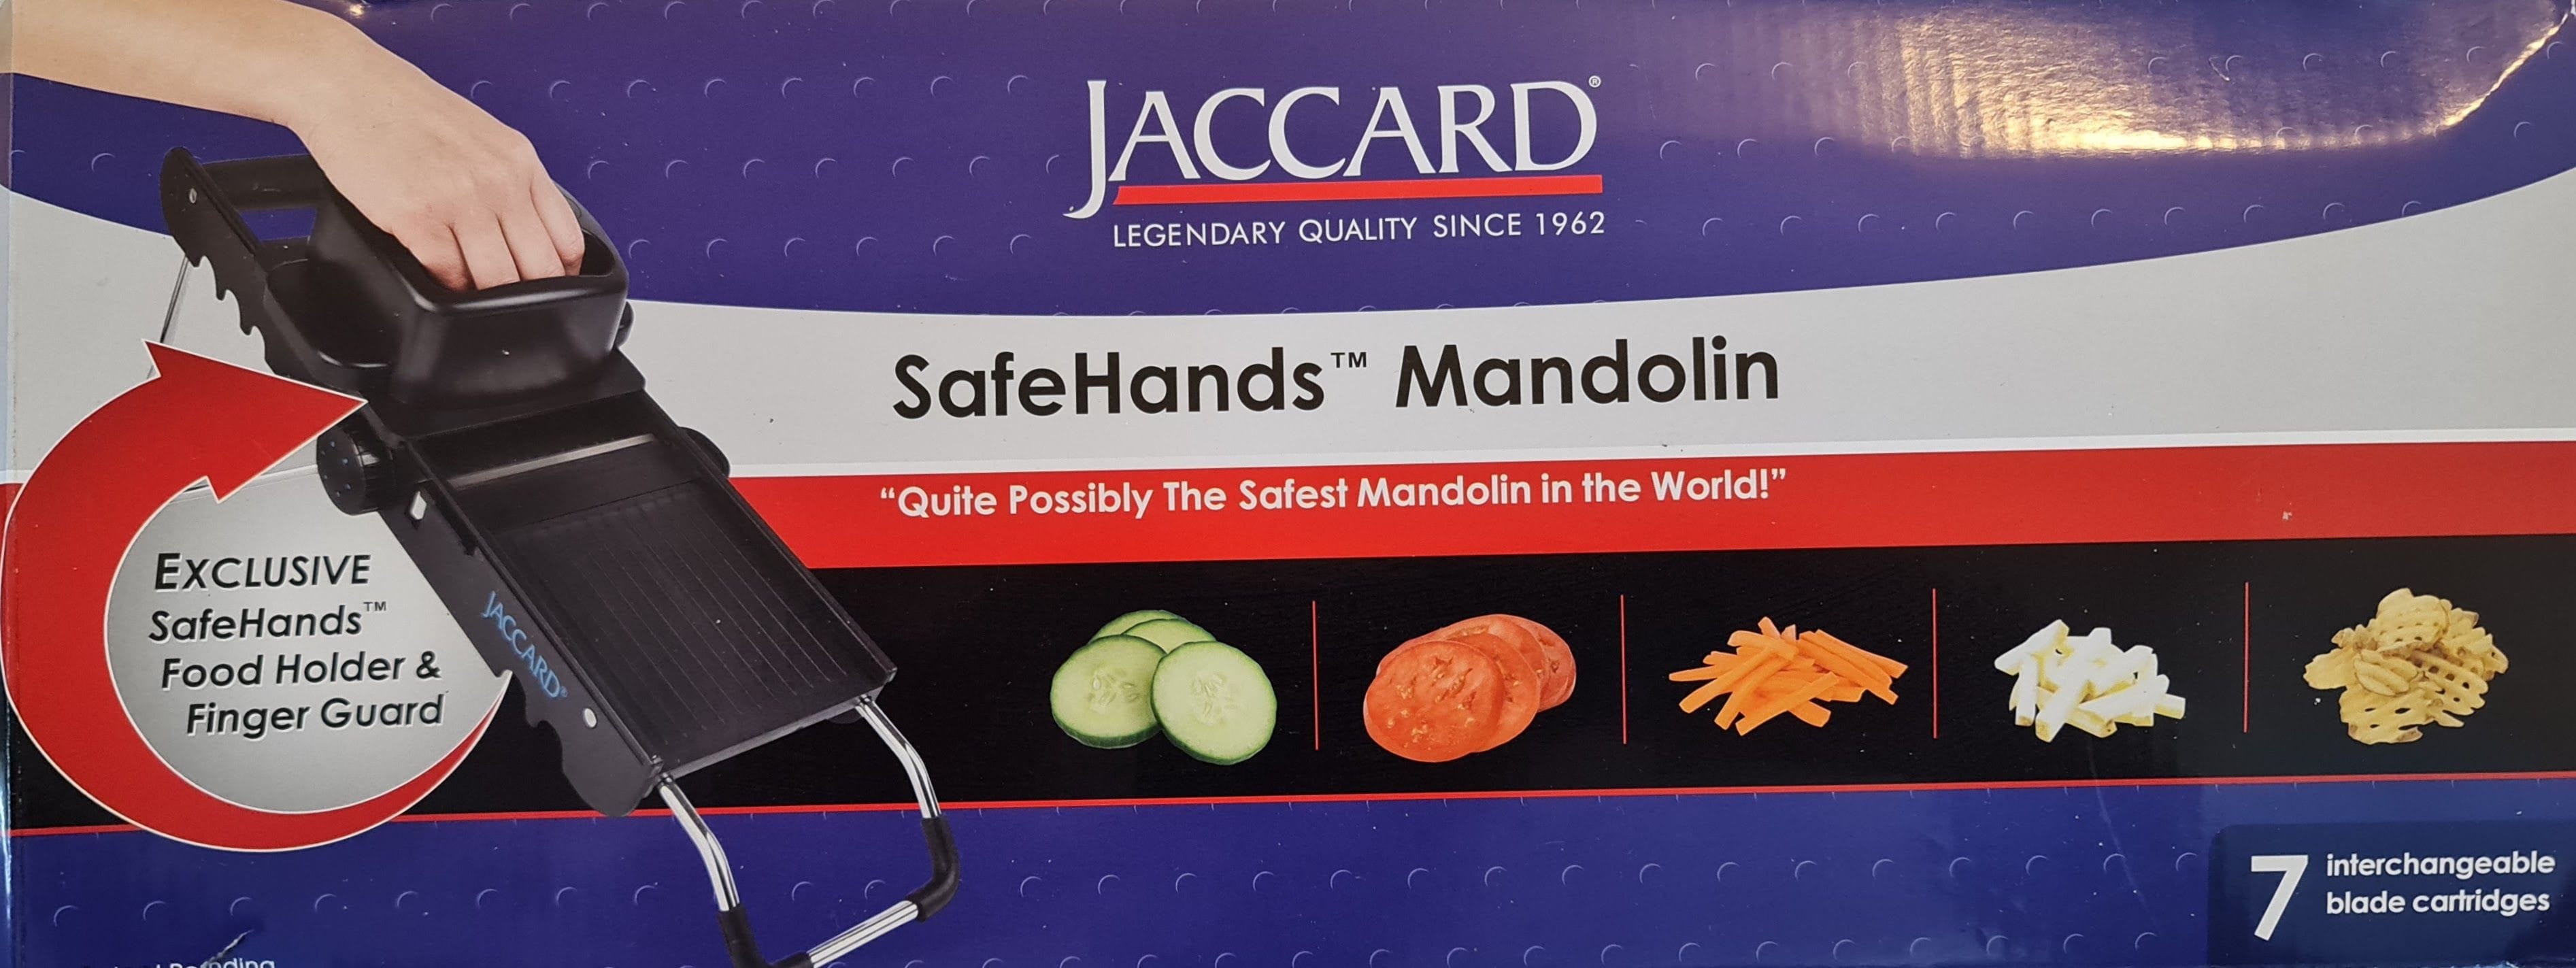 Jaccard Safe Hands Mandolin